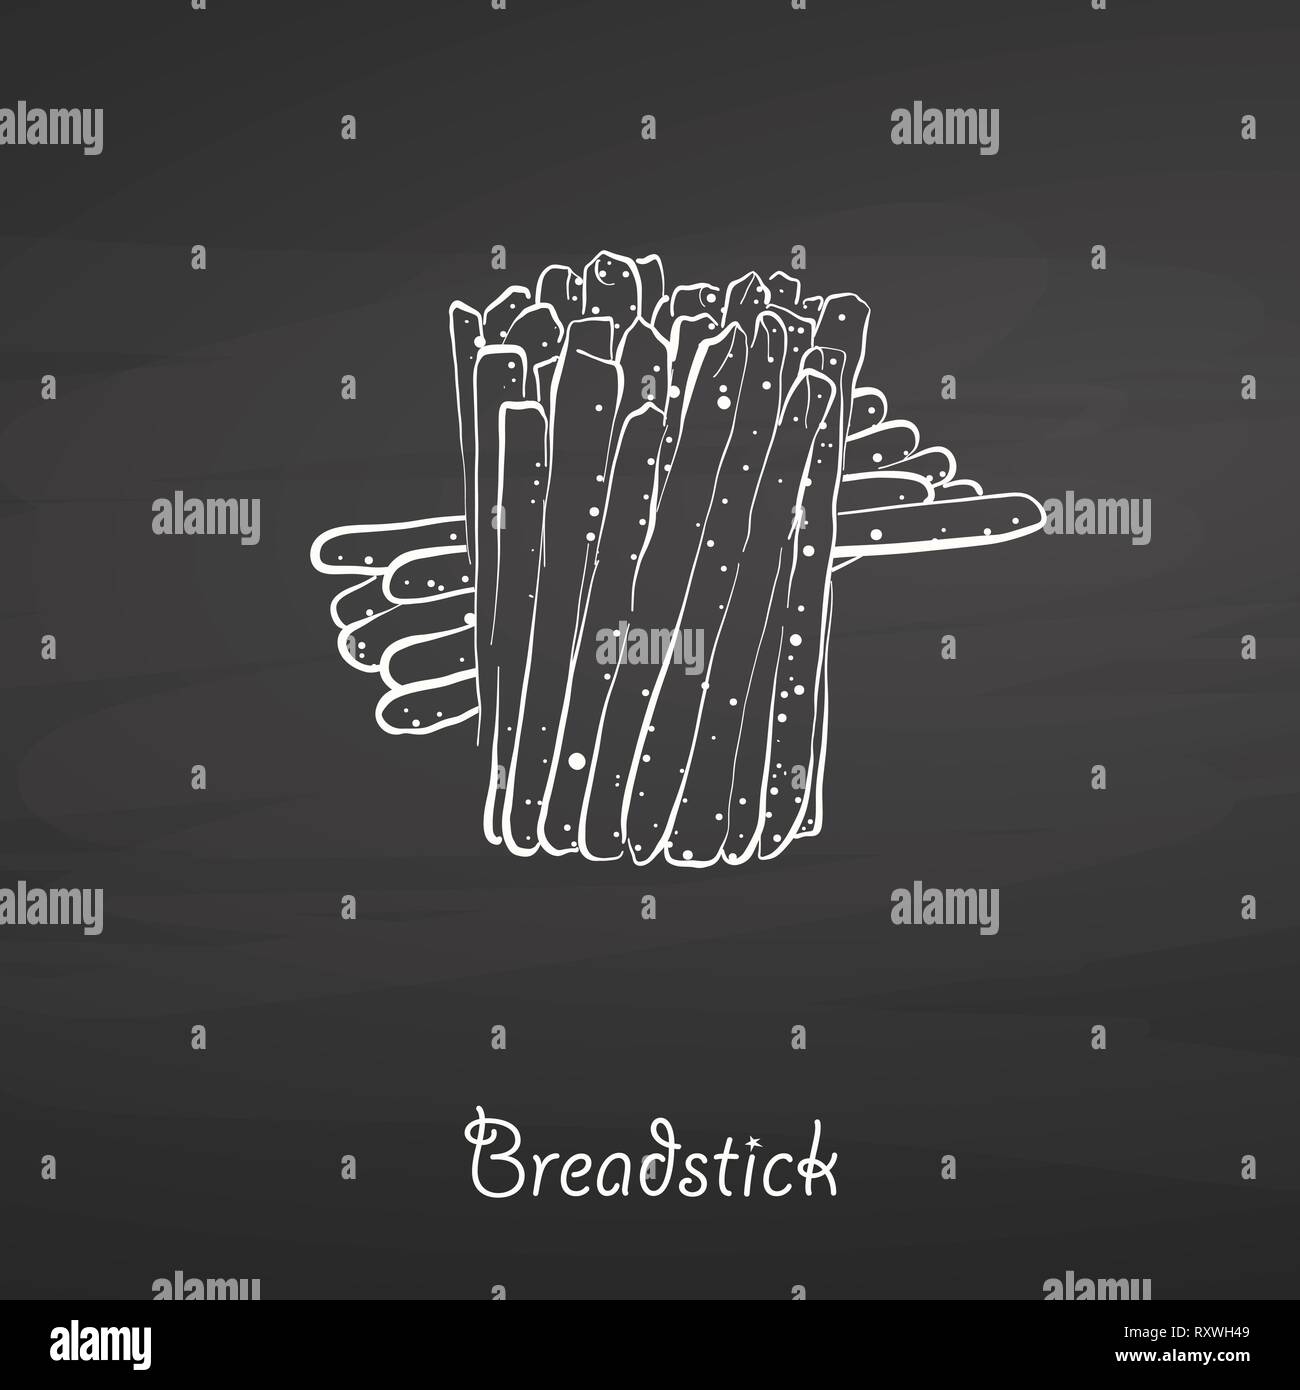 Breadstick essen Skizze auf dem Schwarzen Brett. Vektor Zeichnung von trockenem Brot, in der Regel in Italien bekannt. Essen Abbildung Serie. Stock Vektor